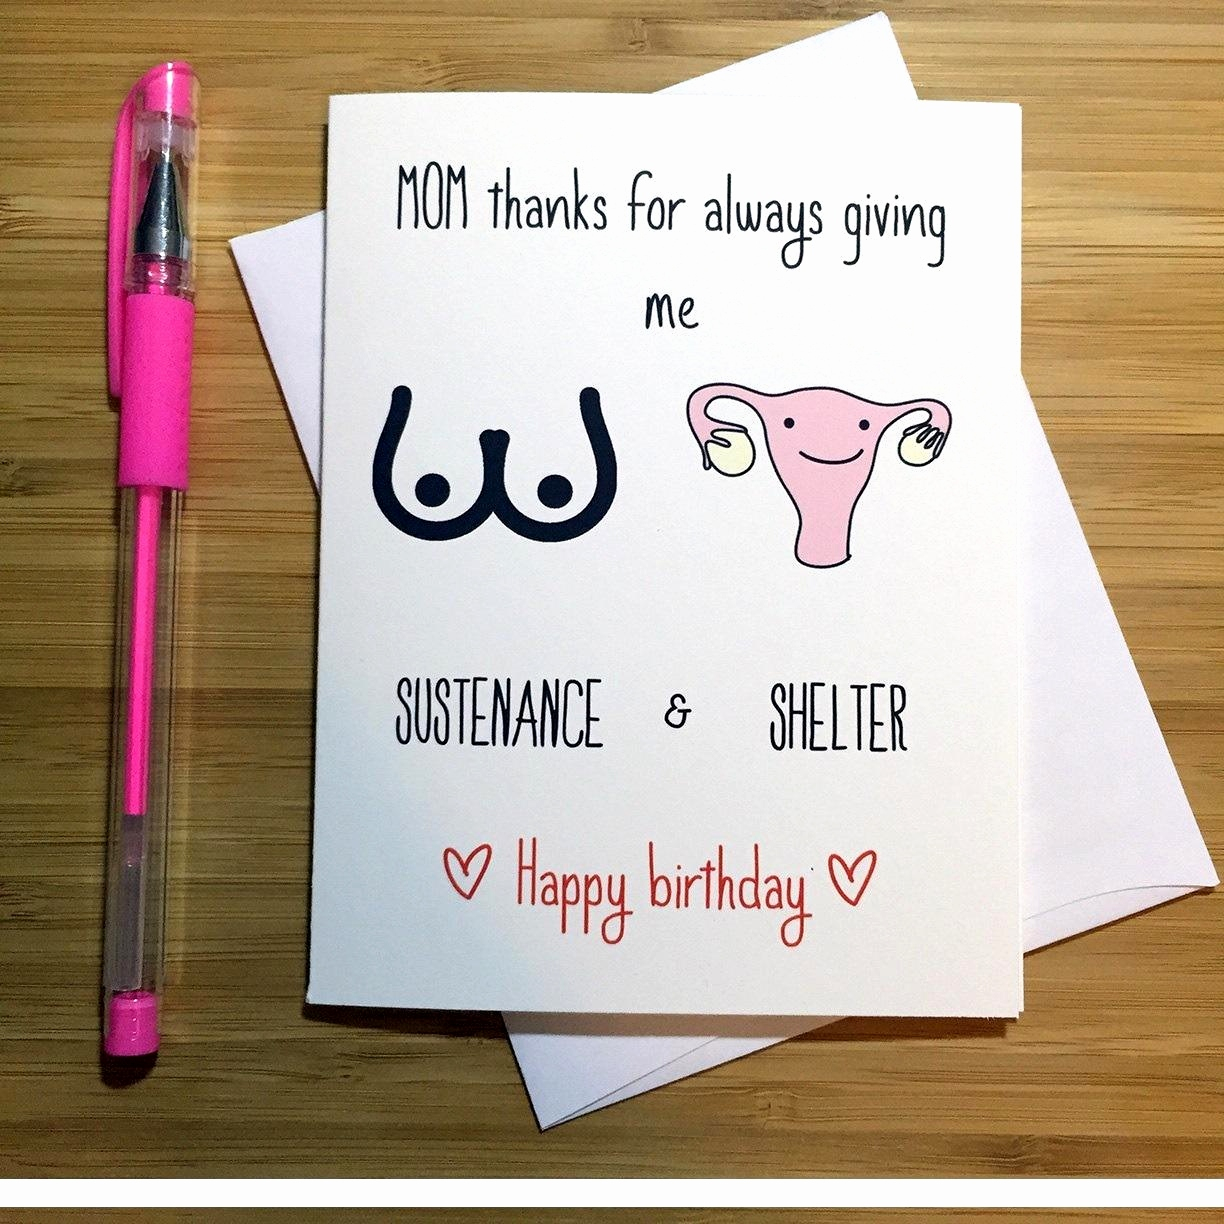 Easy Birthday Card Ideas For Friends Birthday Greeting Card For Friend Elegant Diy 3 Easy Greeting Card